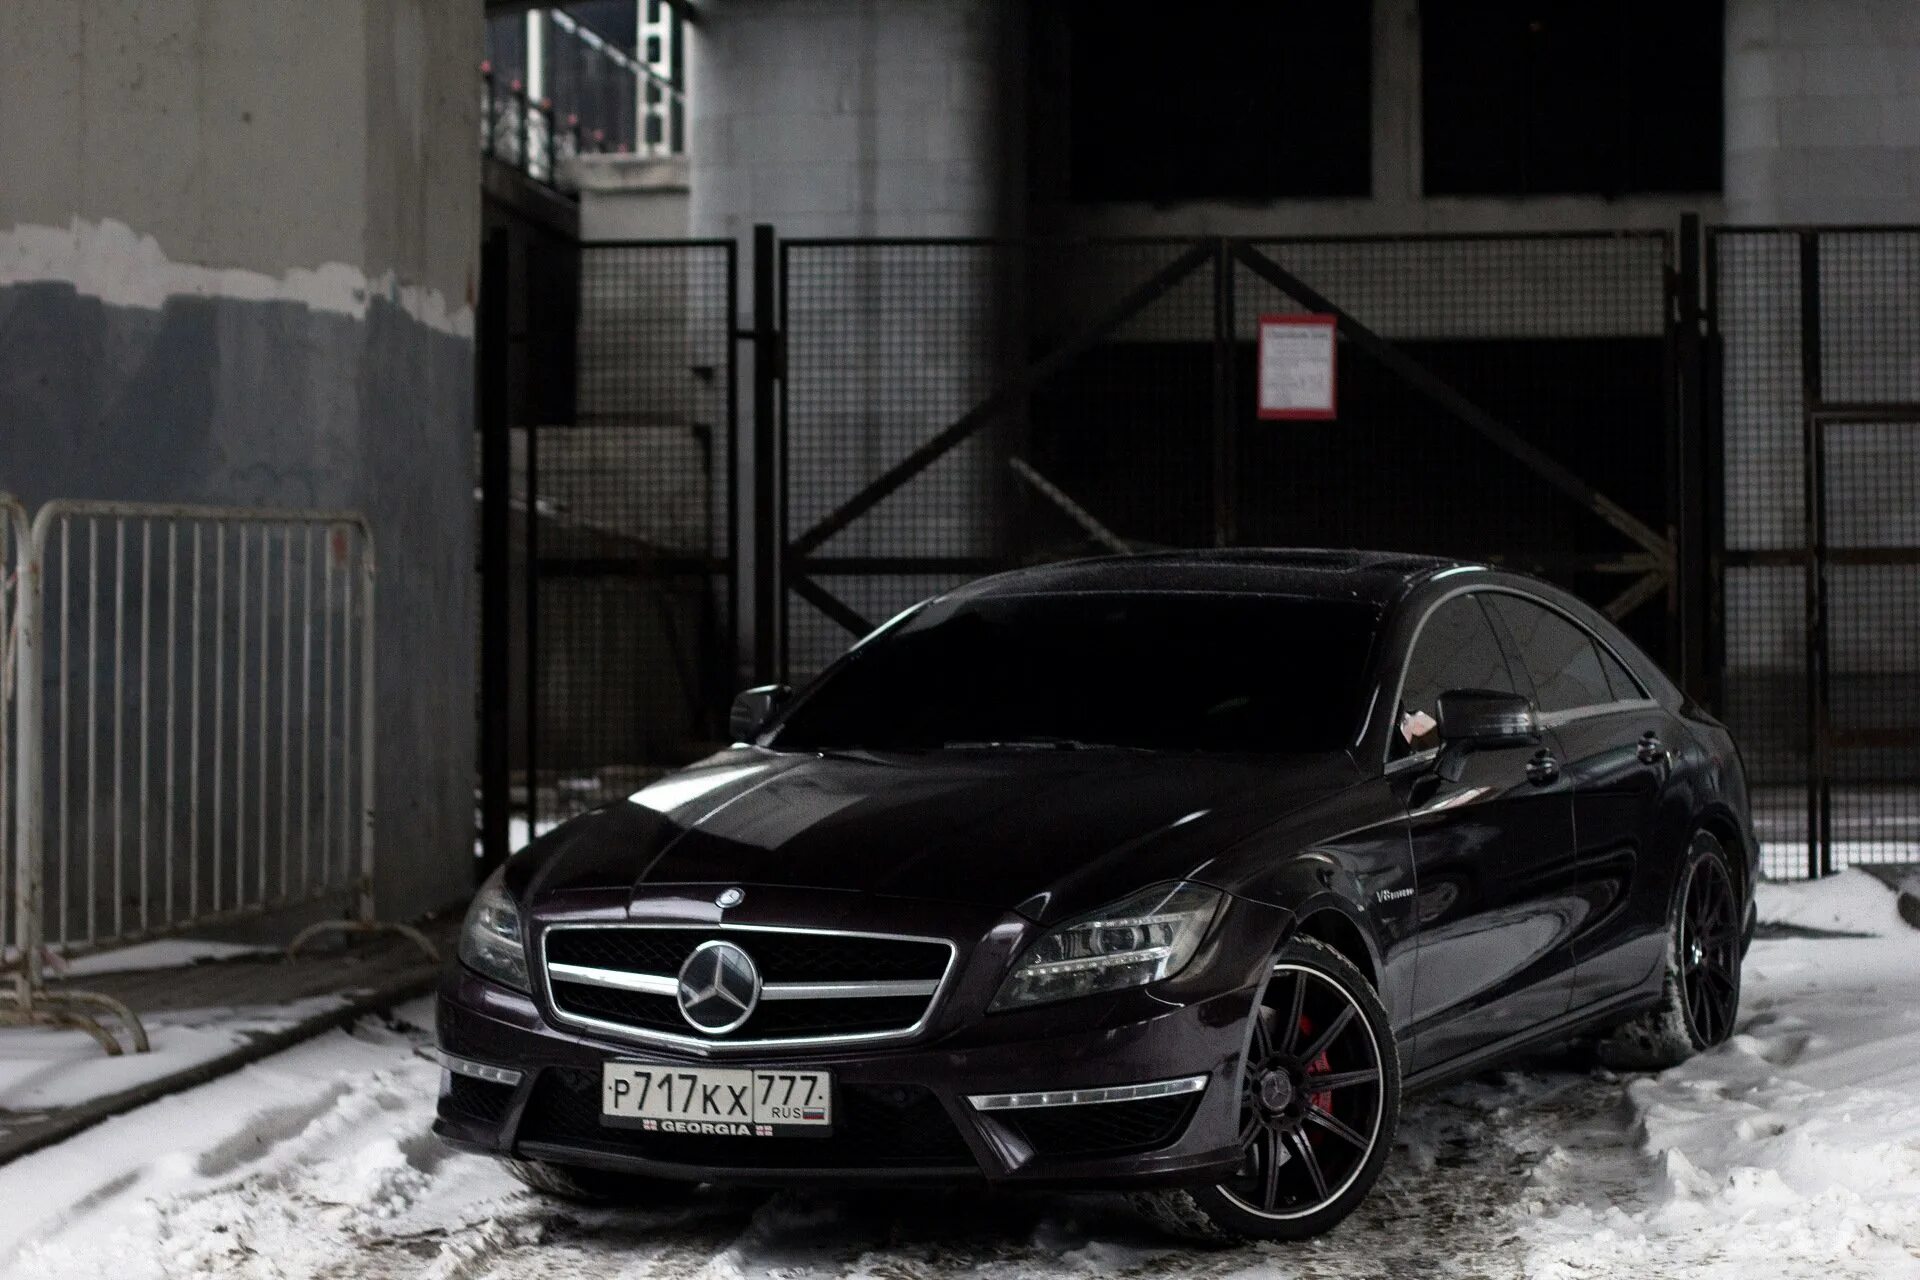 Черная 63. Mercedes Benz CLS 63 AMG. ЦЛС 63 АМГ черный. Мерседес ЦЛС 63 АМГ. Mercedes Benz CLS 63 AMG Black.